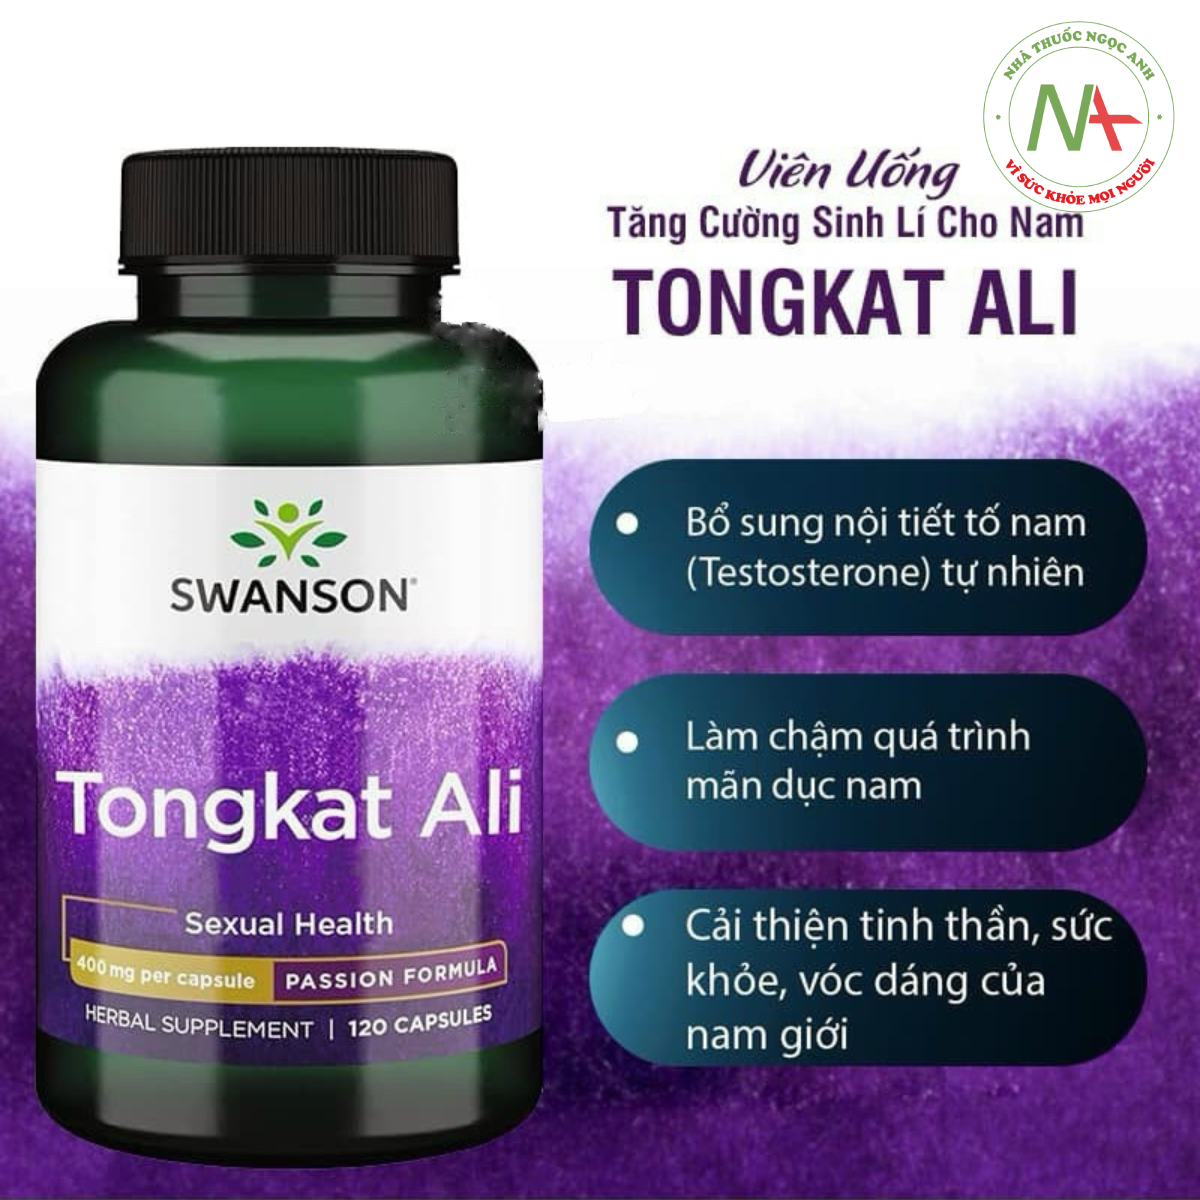 Hiệu quả của Tongkat Ali Swanson